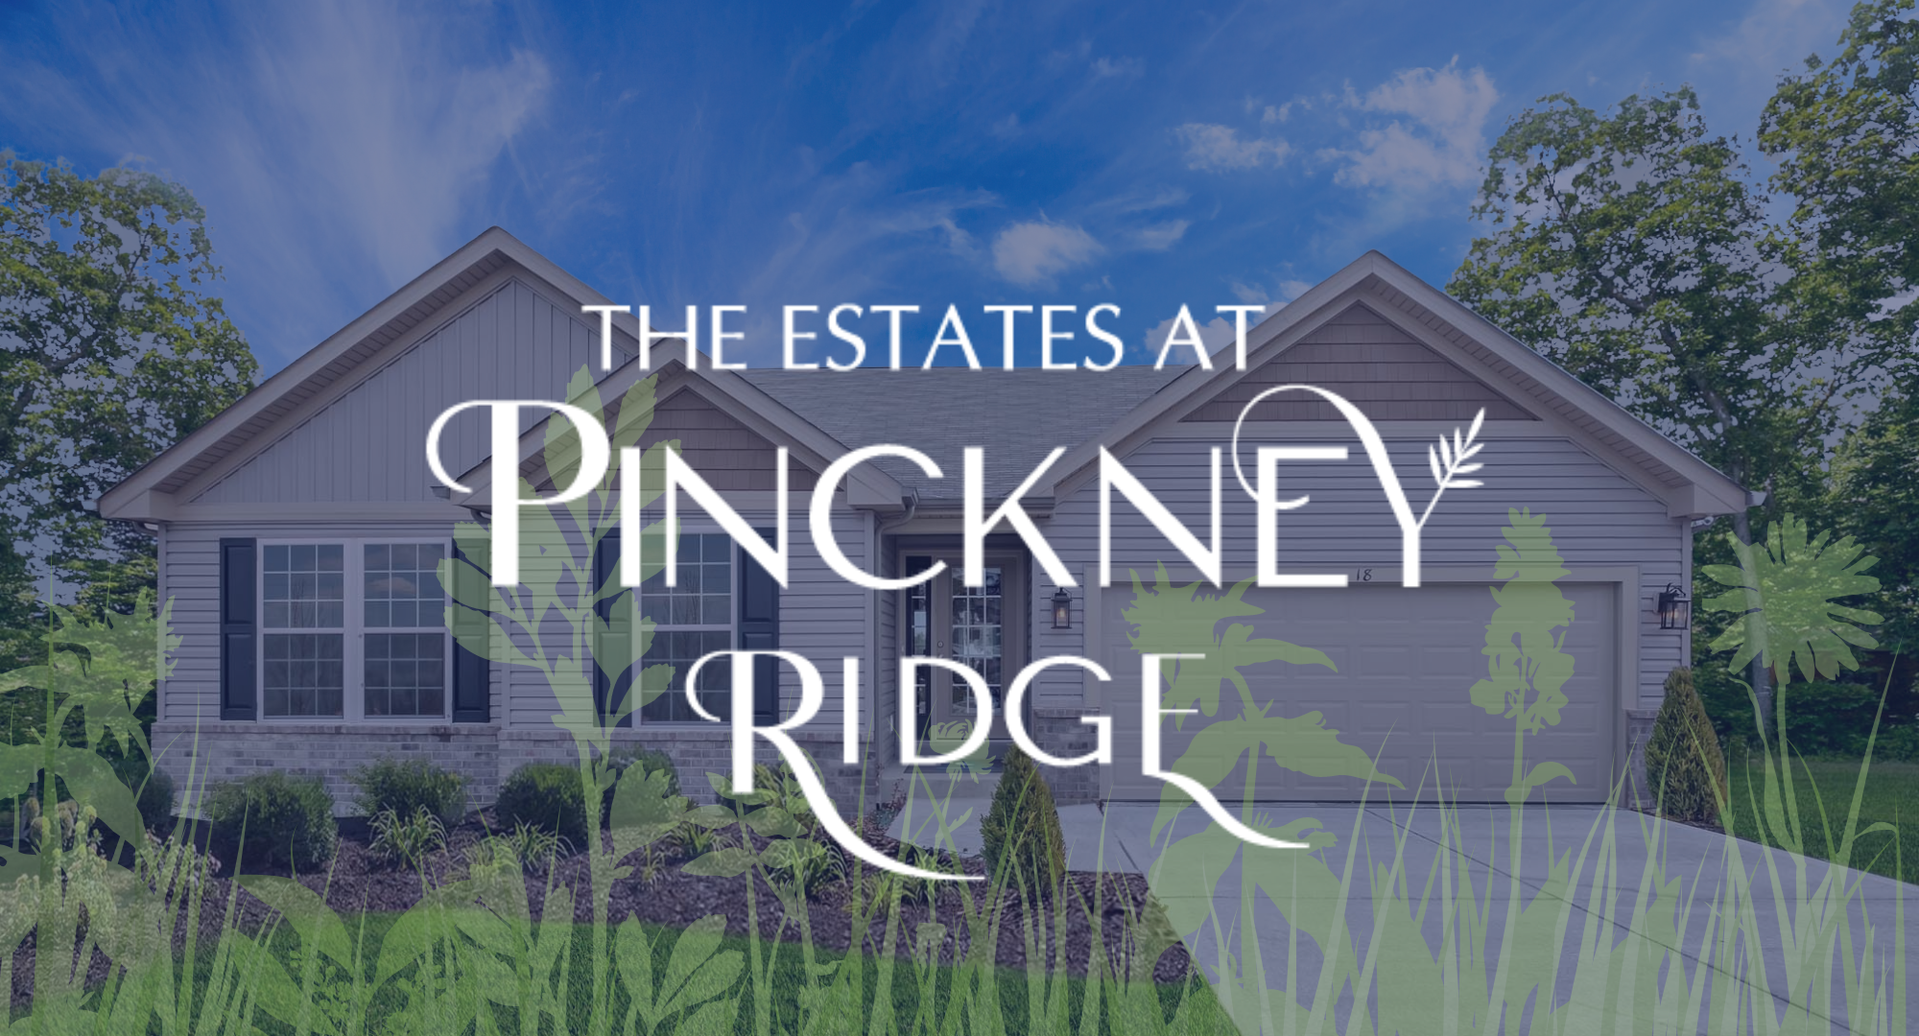 The Estates at Pinckney Ridge - New Homes Warrenton, MO. Estates at Pinckney Ridge New Homes in Warrenton, MO